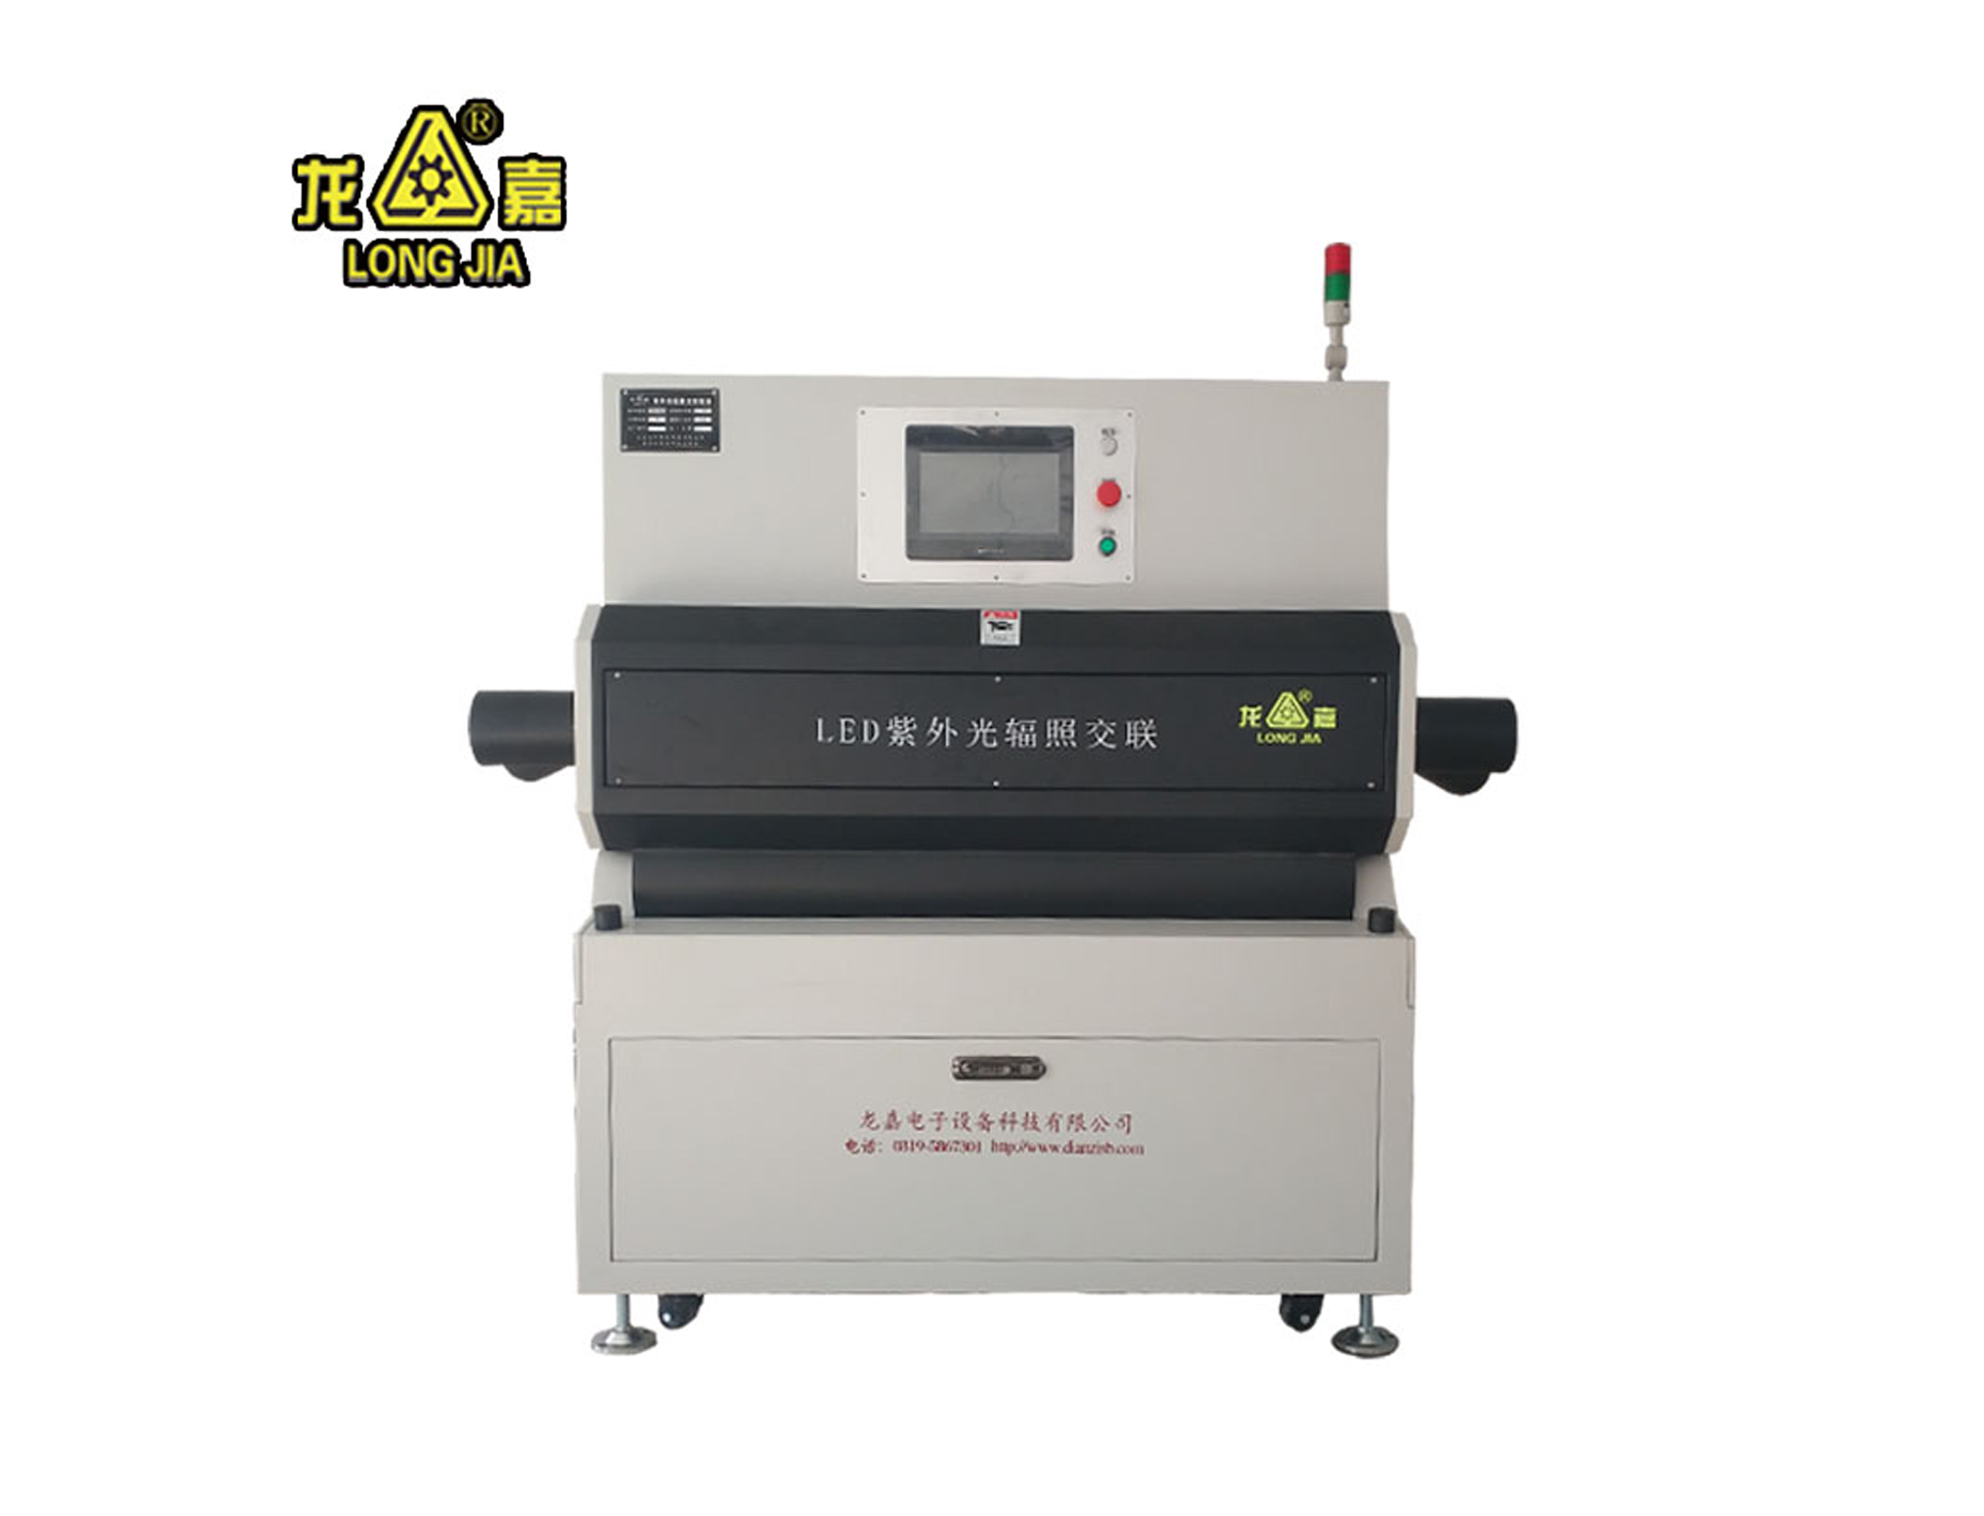 China kundenspezifische spezifische Wellenlänge UV / IR LED Streifen für  spezielle Verwendung Hersteller und Lieferanten - China Factory - GLU  Lighting